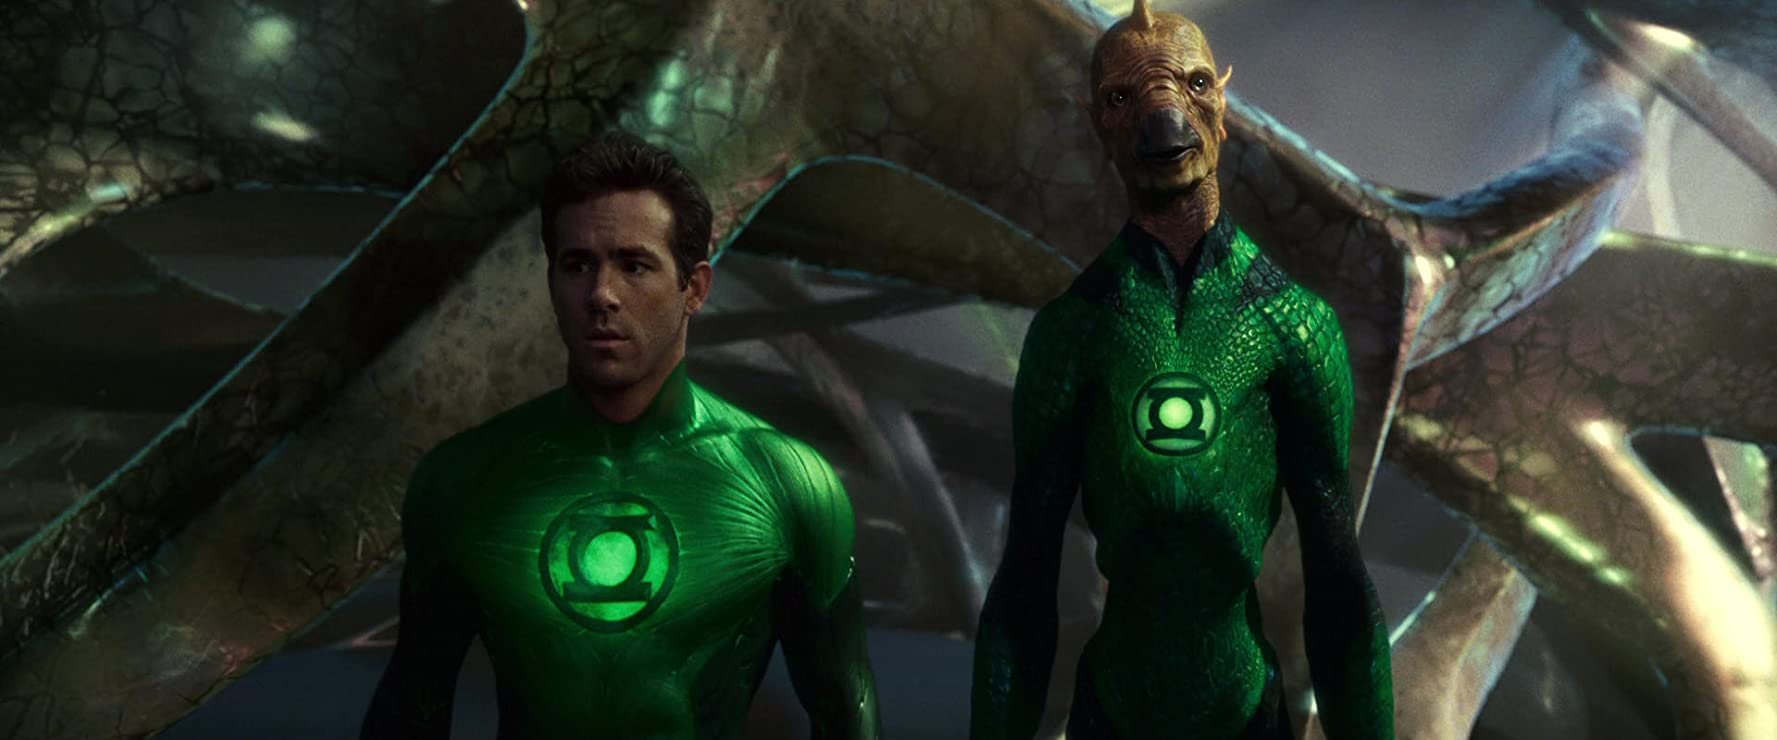 Lanterna Verde (2011) foi bem criticado devido aos efeitos visuais.